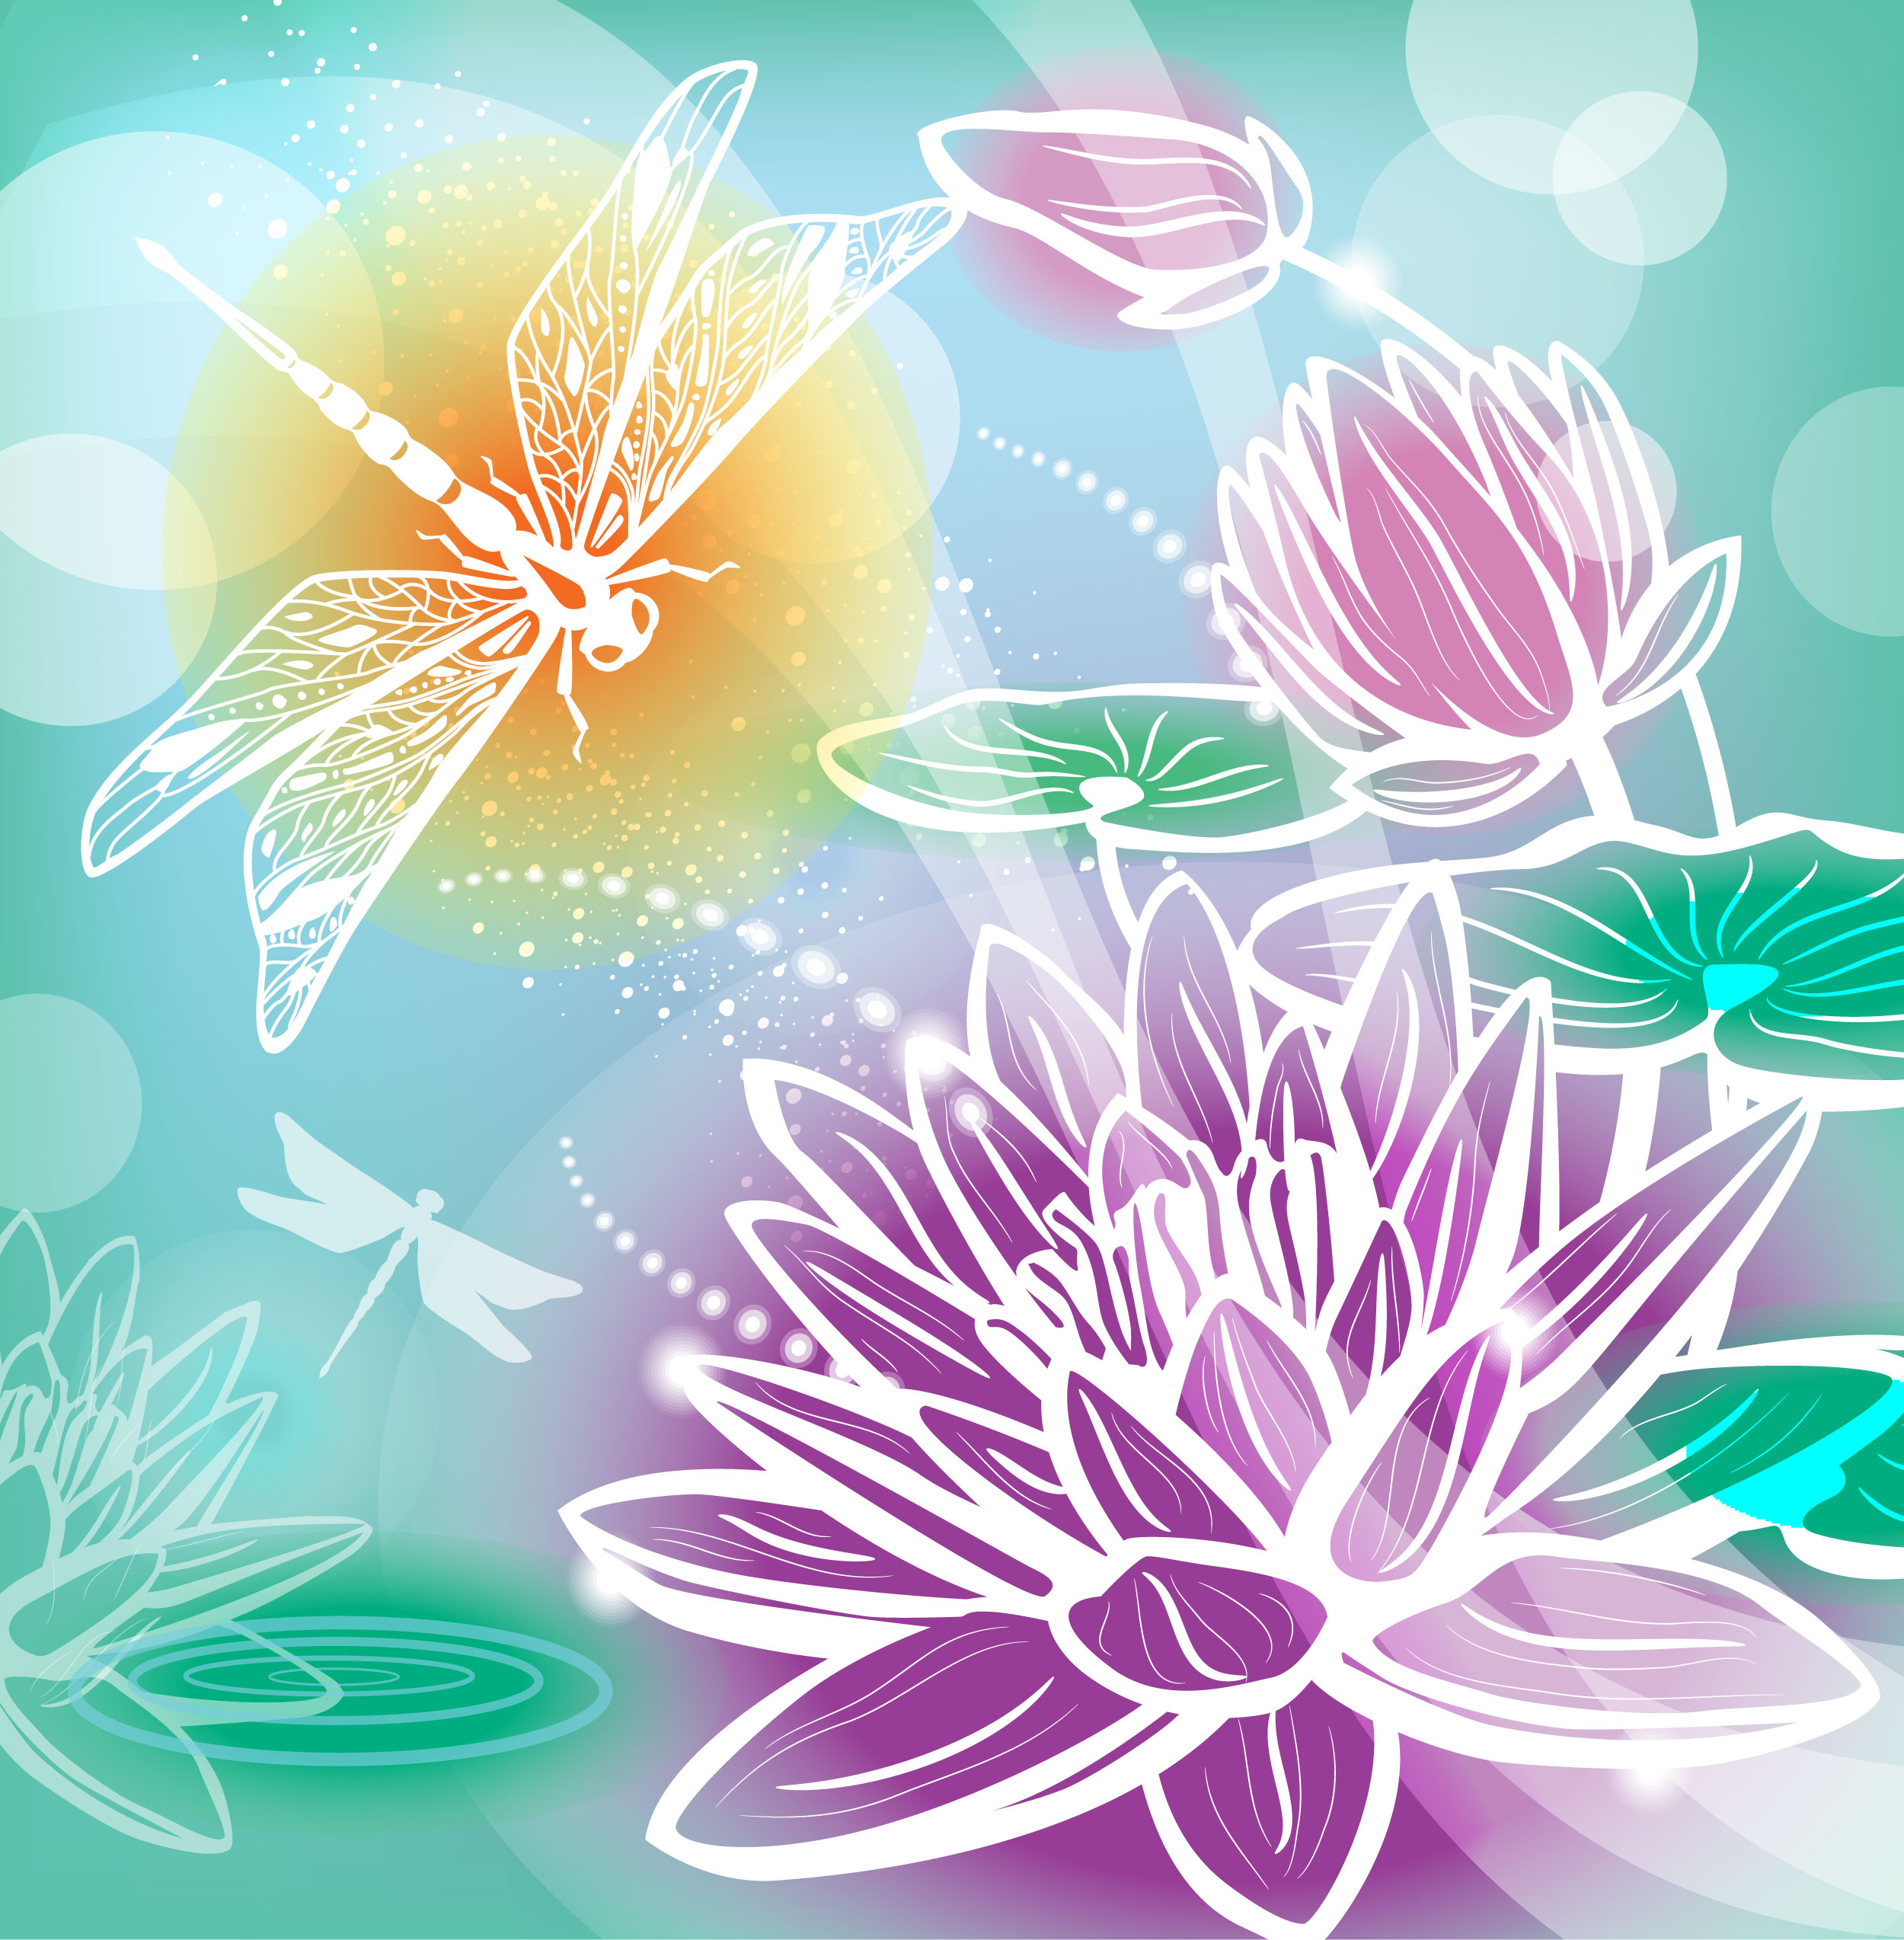 蓮 はす 睡蓮 すいれん の花のイラスト 画像 無料のフリー素材集 百花繚乱